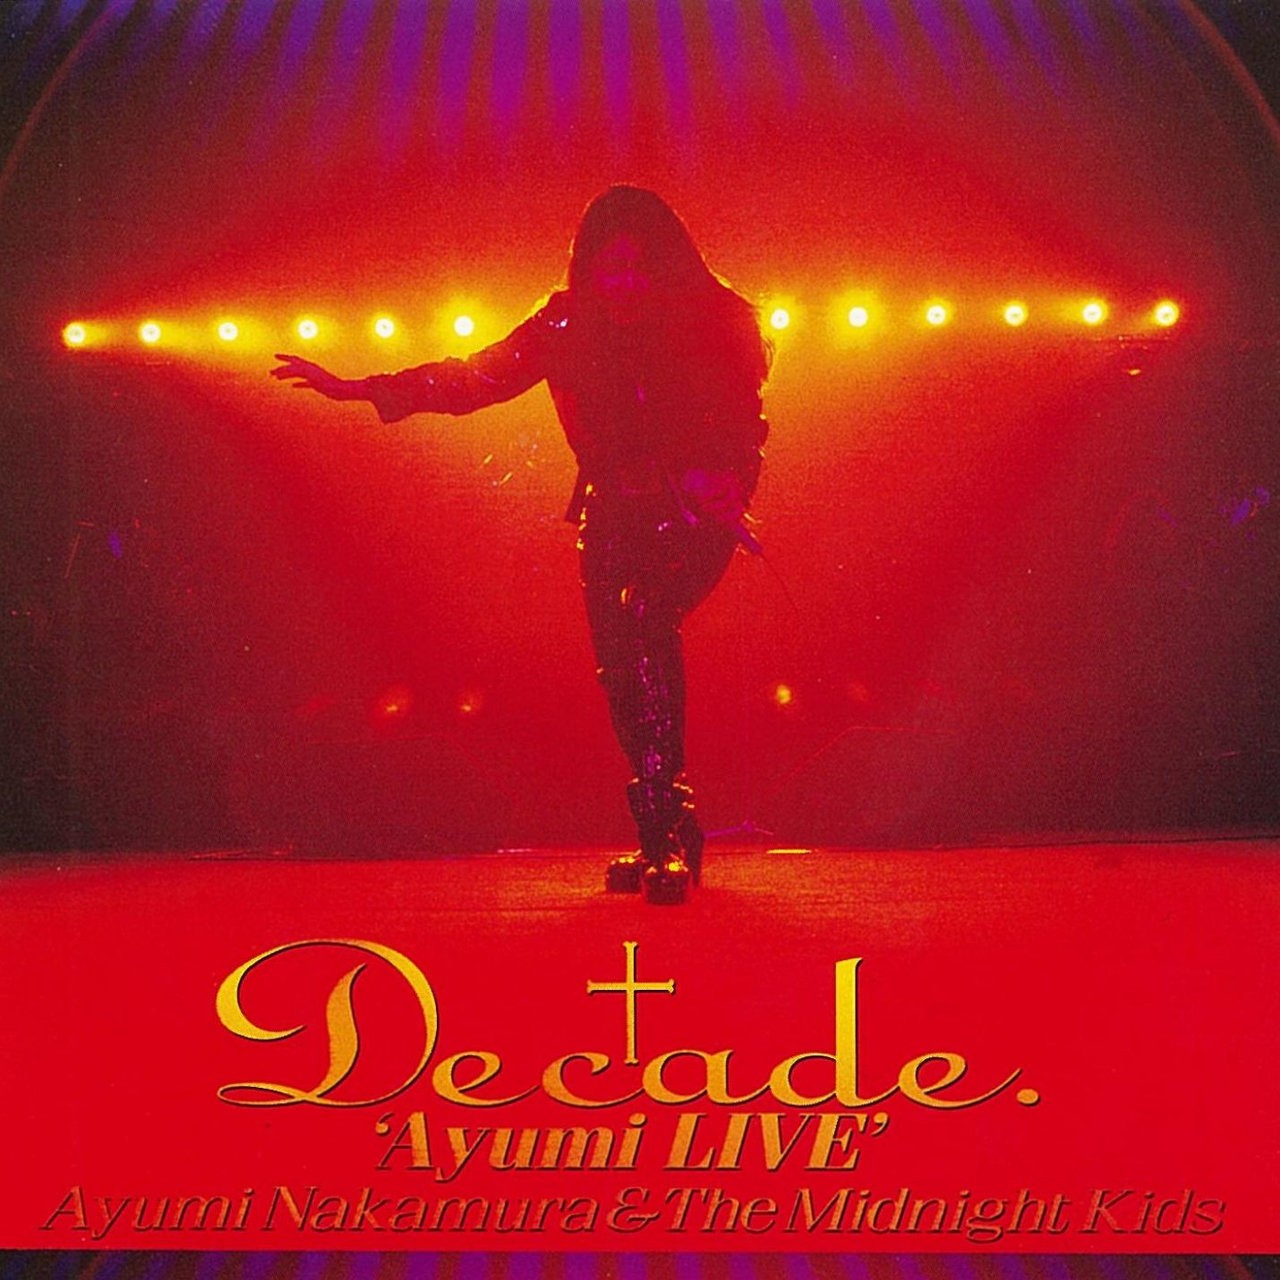 中村あゆみ (Ayumi Nakamura) - Decade. 'Ayumi LIVE' (35周年記念 2019 Remaster) [FLAC 24bit/48kHz]